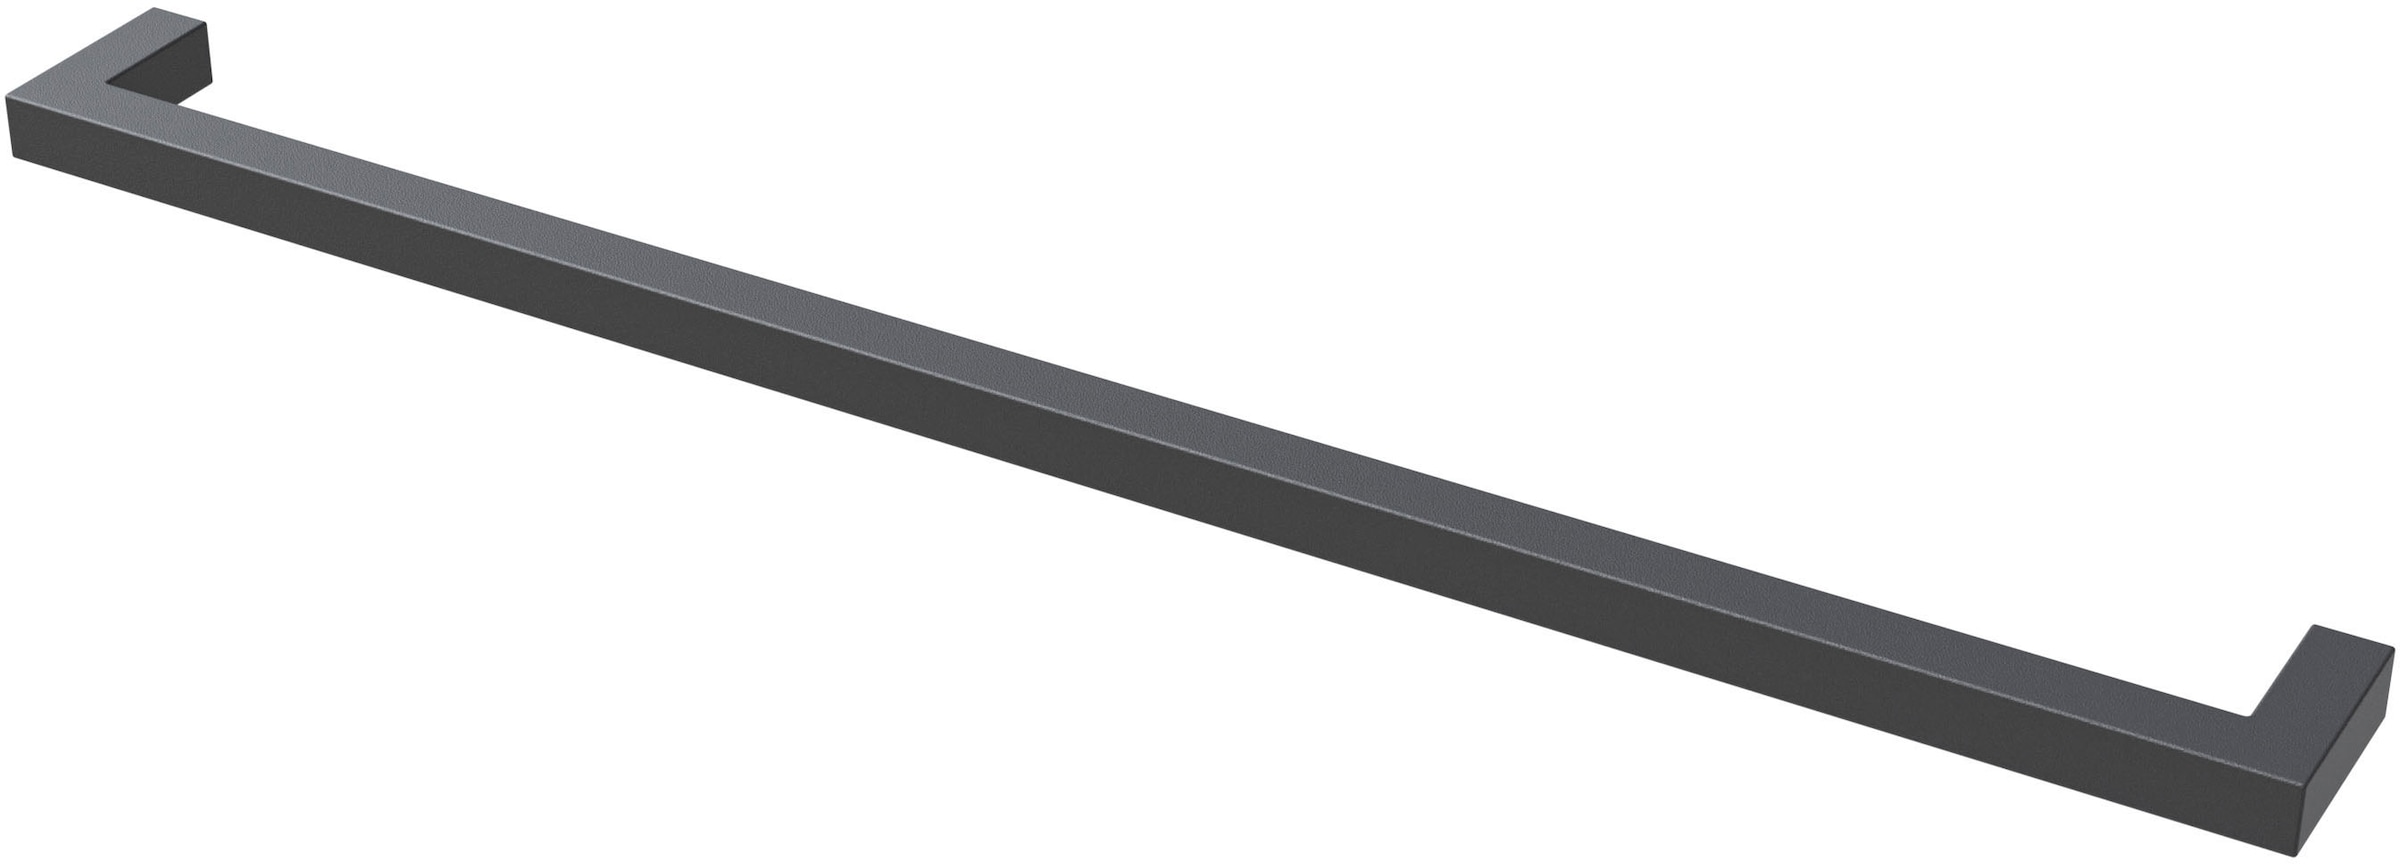 Saphir Griff »Quickset 945 Möbel-Griff lang, Schwarz Matt, 33 cm breit, eckig«, (1 St.), Schrankgriff, Bohrabstand 320 mm, Aluminium